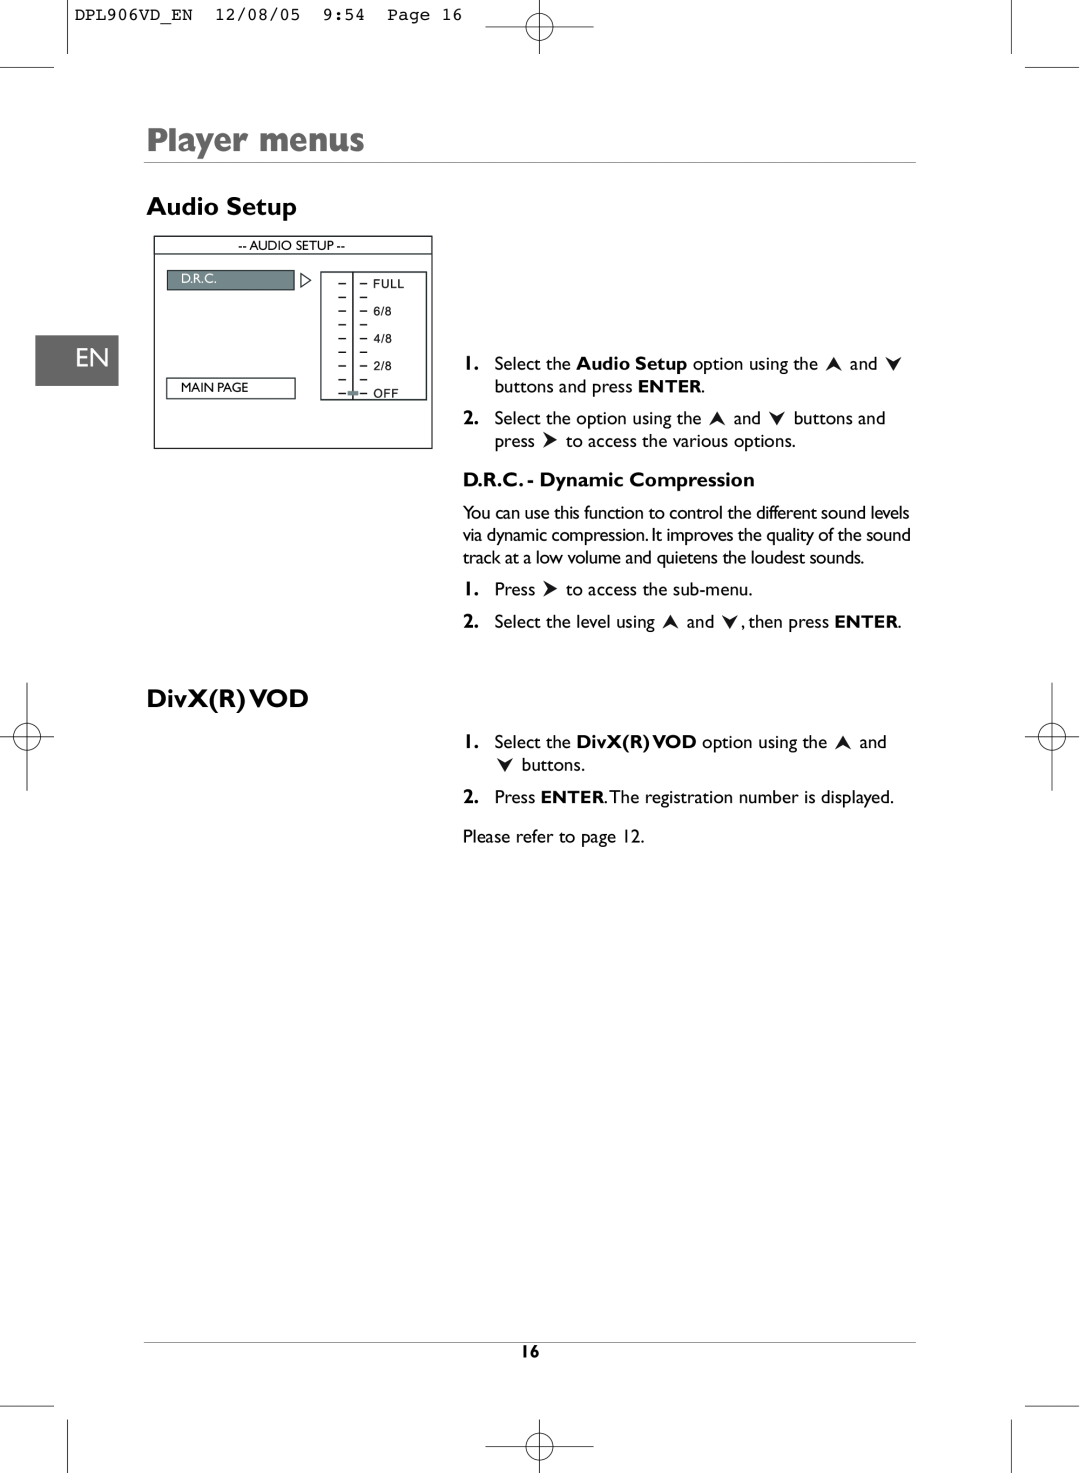 Technicolor - Thomson DPL906VD_EN manual Player menus, Audio Setup, DivXR VOD, D.R.C. - Dynamic Compression 